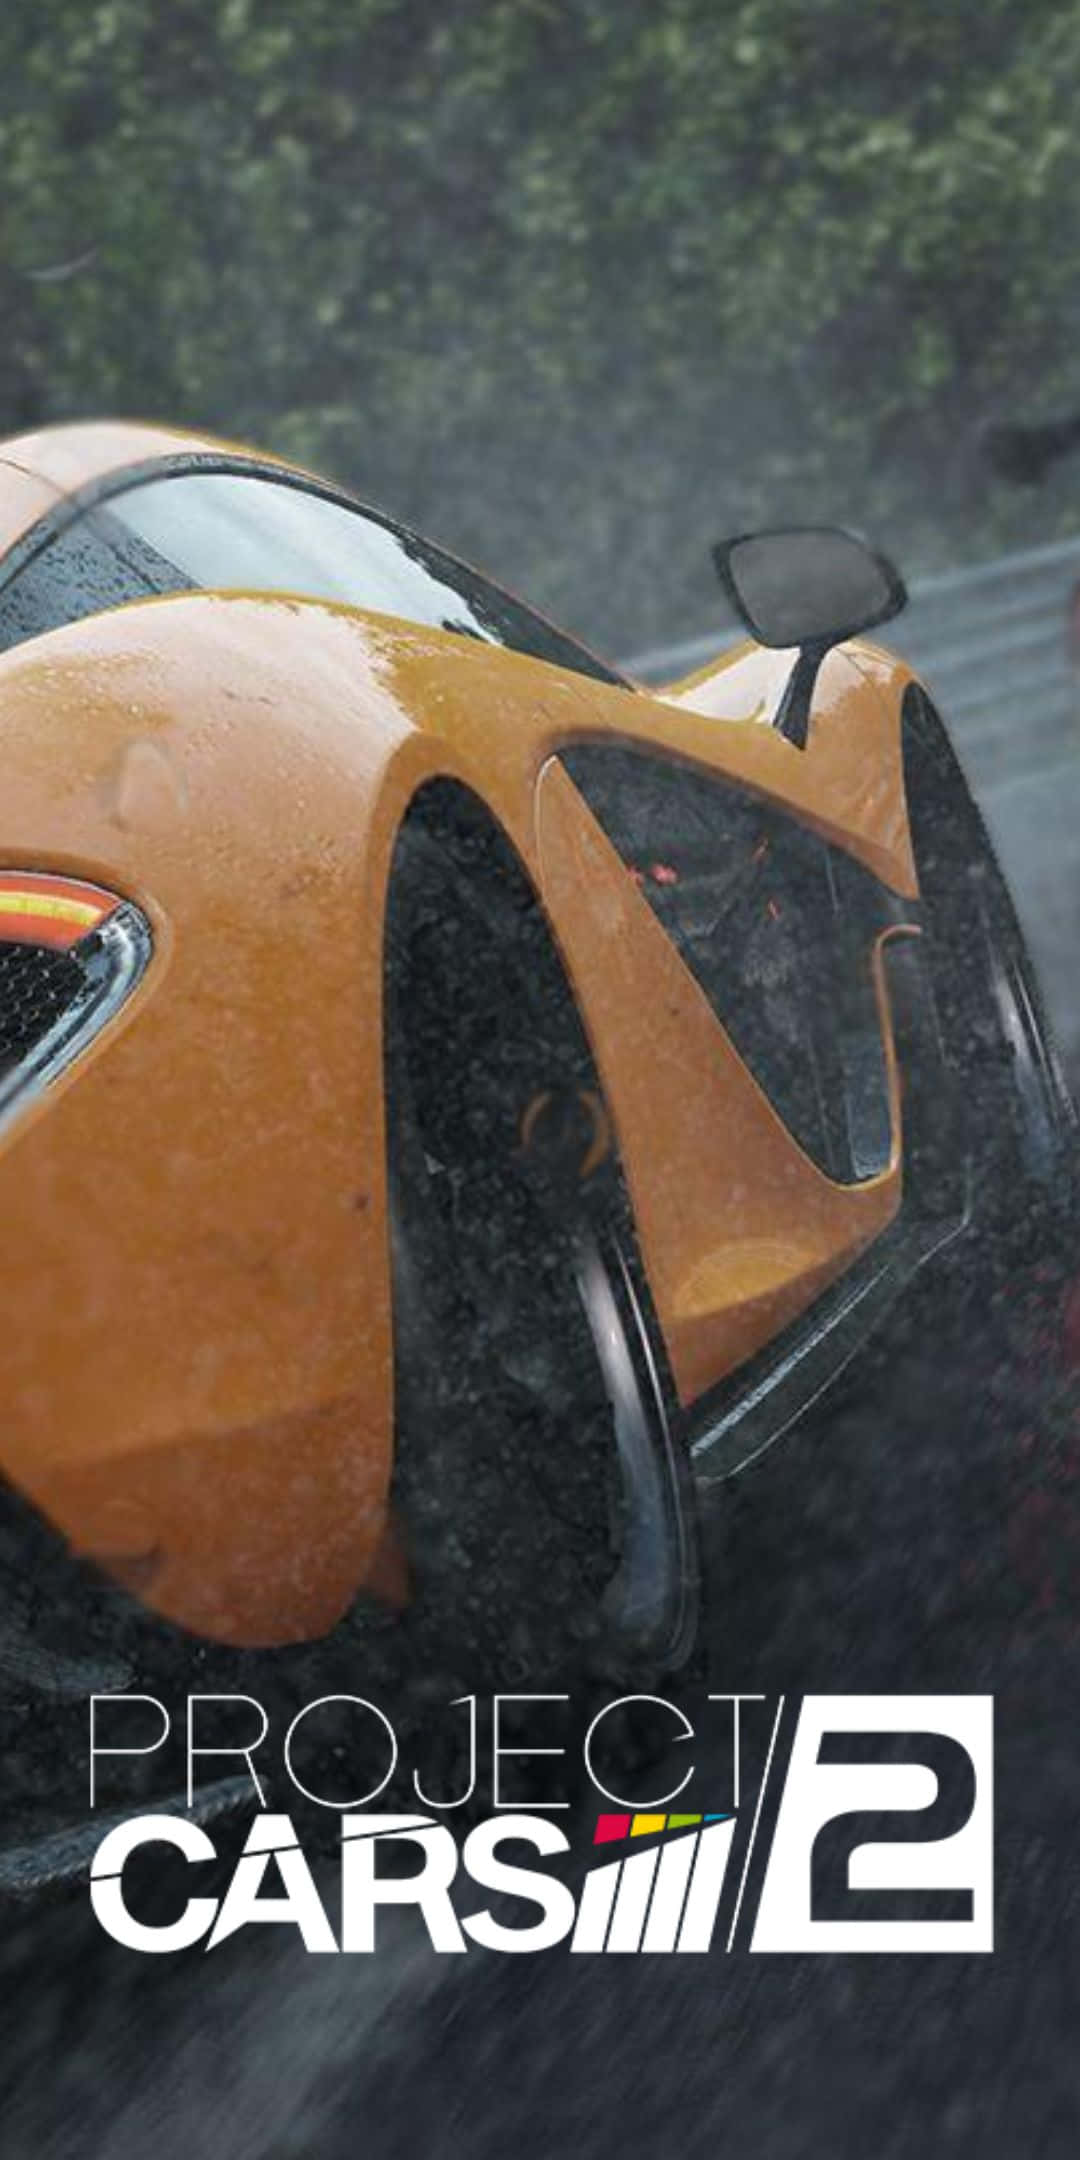 Orange 2016 Mclaren 570s Pixel 3 Project Cars 2 Background